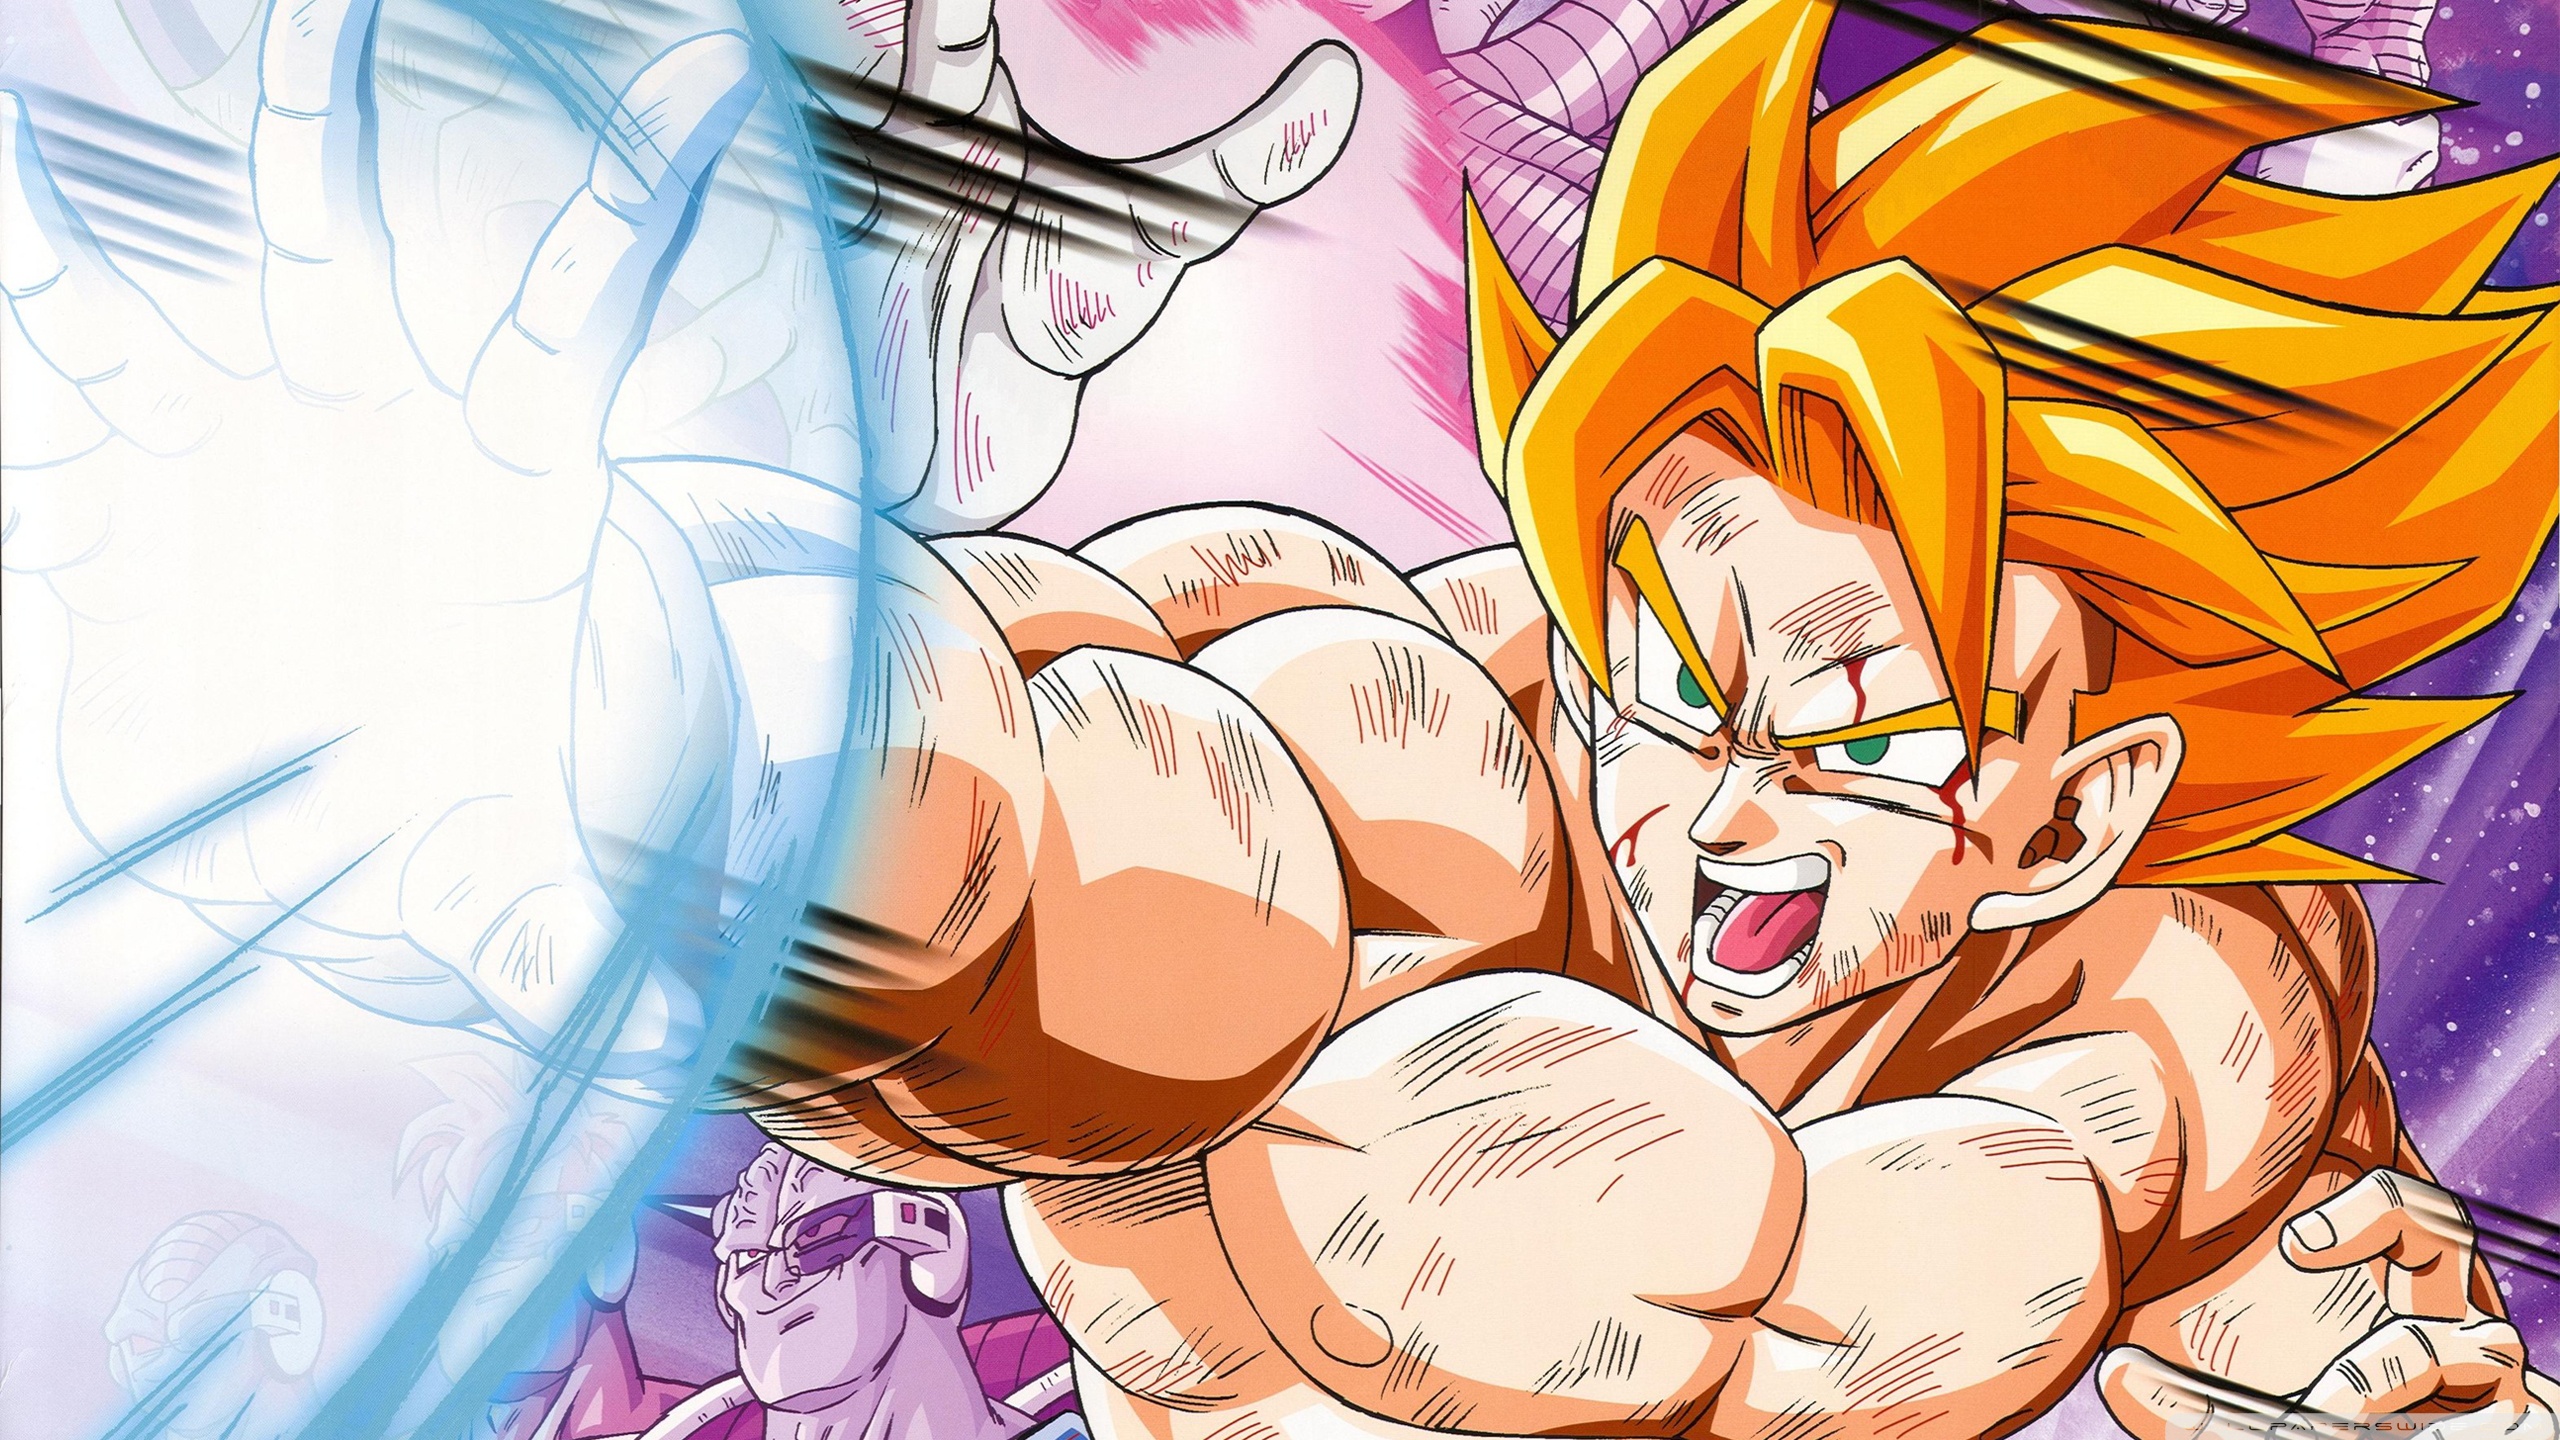 Dragon Ball Super Anime Design: Hãy cùng chúng tôi khám phá những bức tranh vô cùng tuyệt vời về Dragon Ball Super với phong cách anime hiện đại. Màu sắc bắt mắt, hình ảnh cực kỳ sống động và chi tiết. Chắc chắn bạn sẽ phải nói \